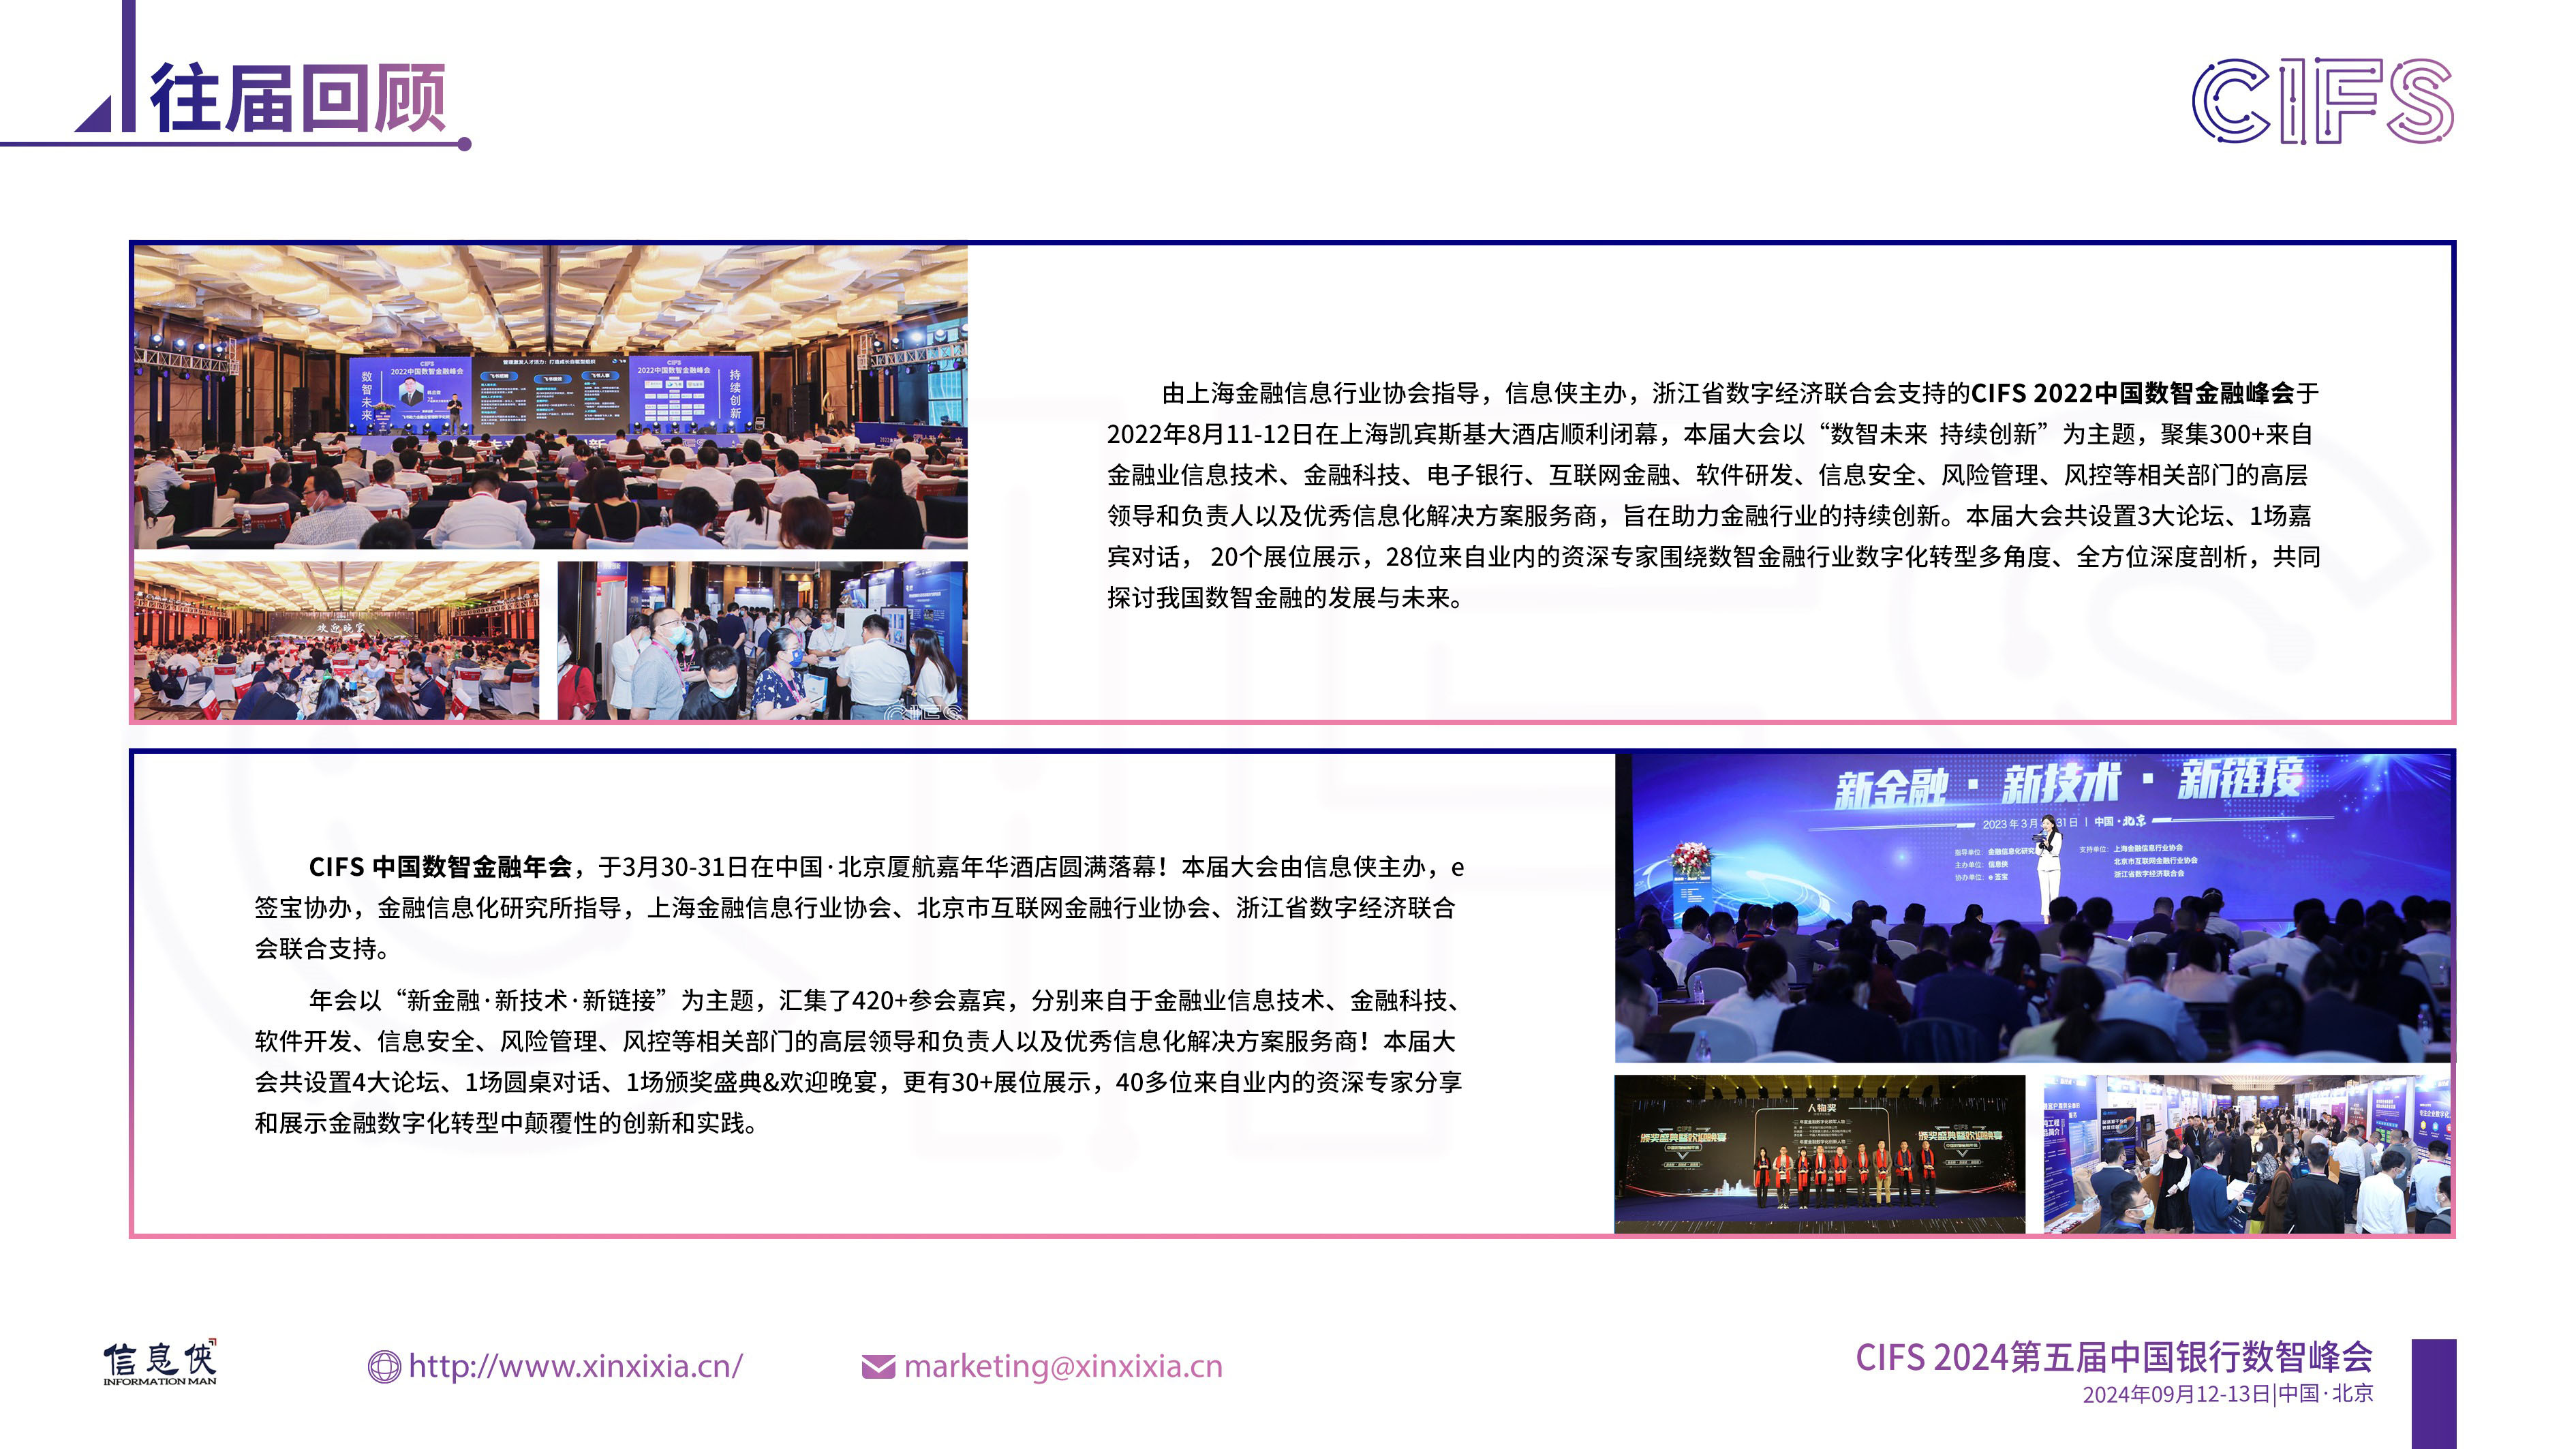 CIFS 2024第五届中国银行数智峰会